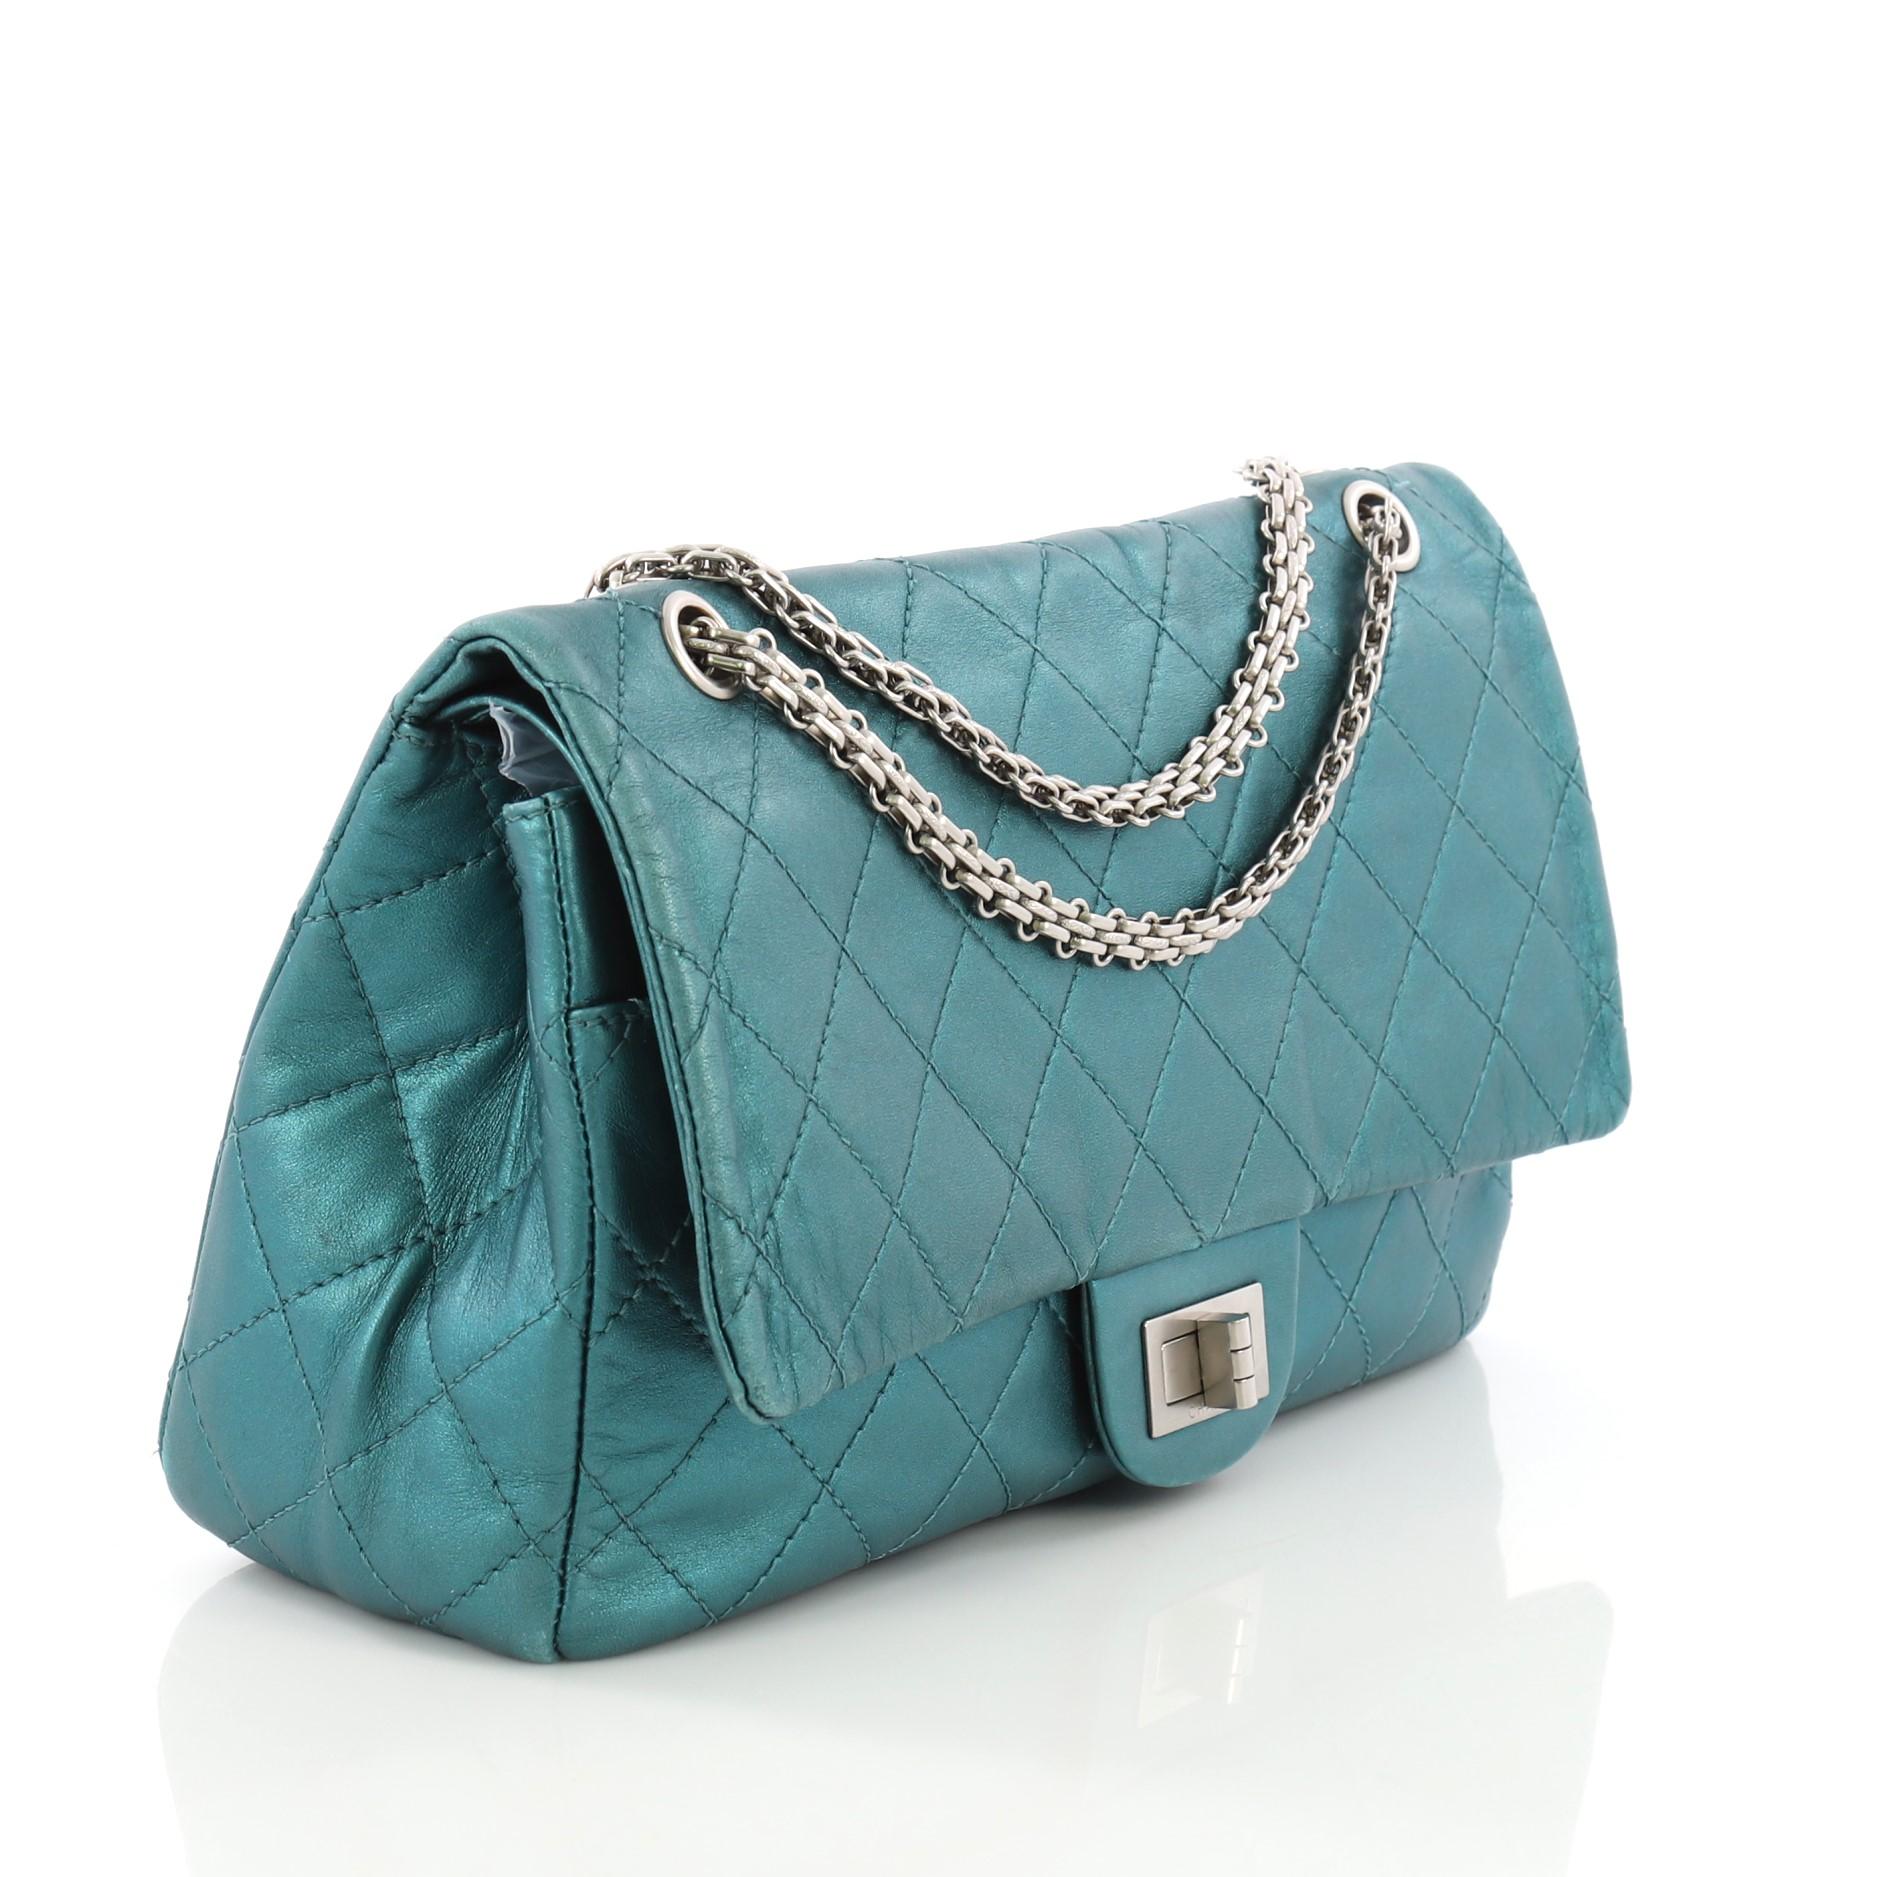 Chanel Reissue 2.55 Handbag Quilted Metallic Aged Calfskin 227 (Blau)